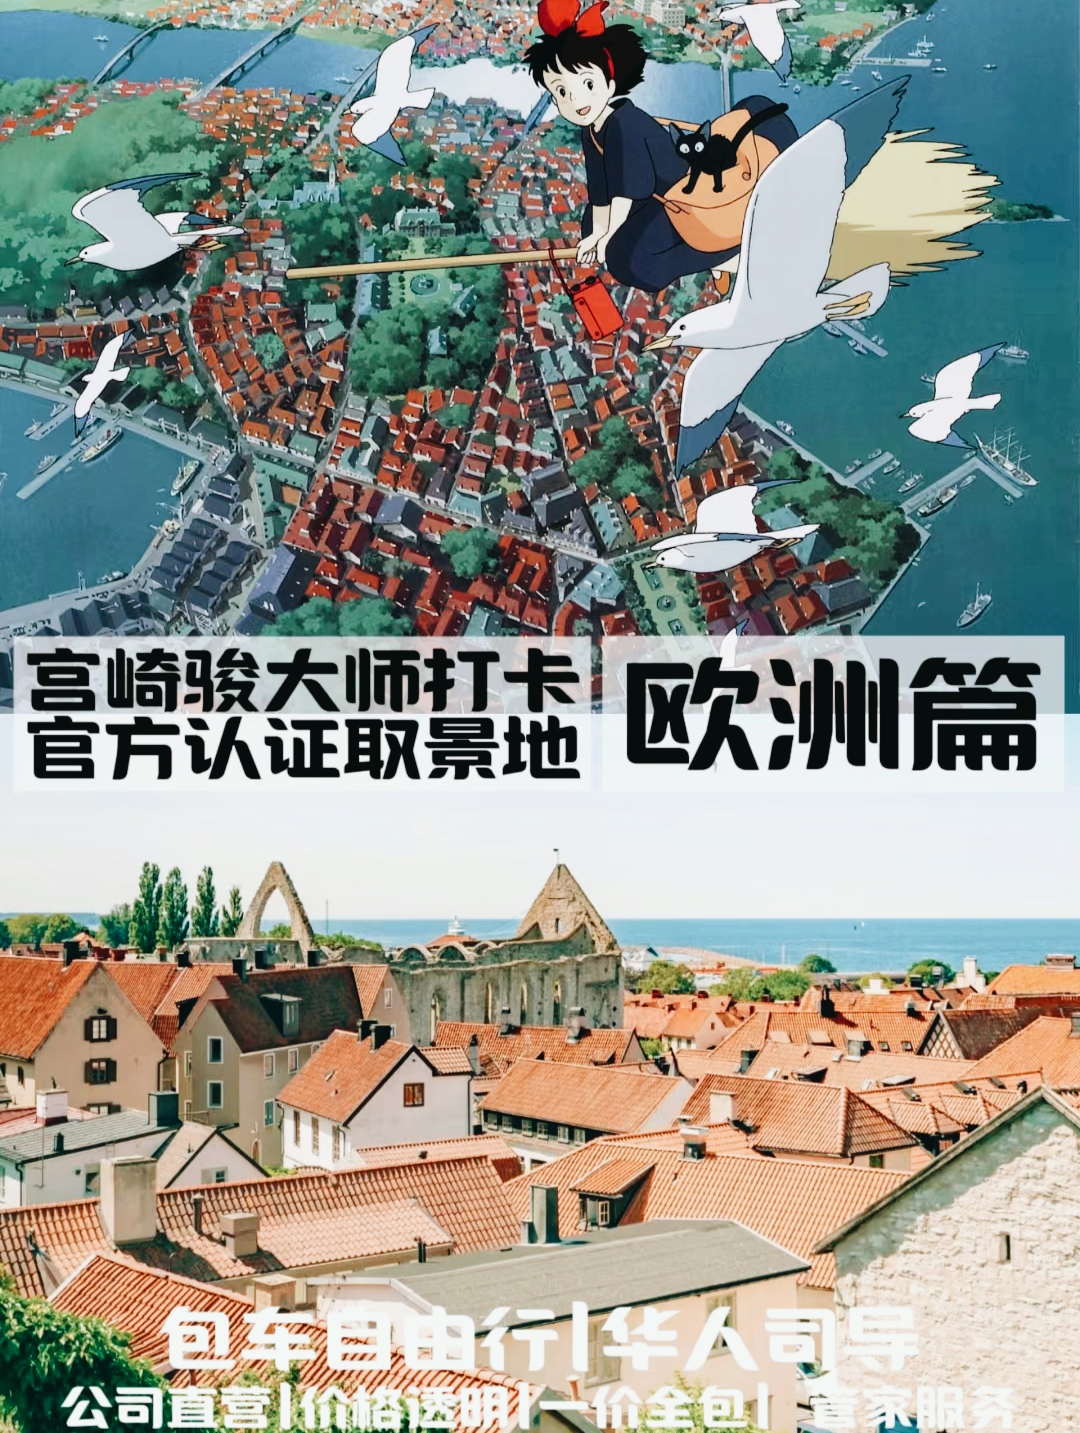 #跟着宫崎骏游欧洲 跟着宫崎骏游欧洲，仿佛进入了一个梦幻般的动画世界。从《天空之城》中那座漂浮在空中